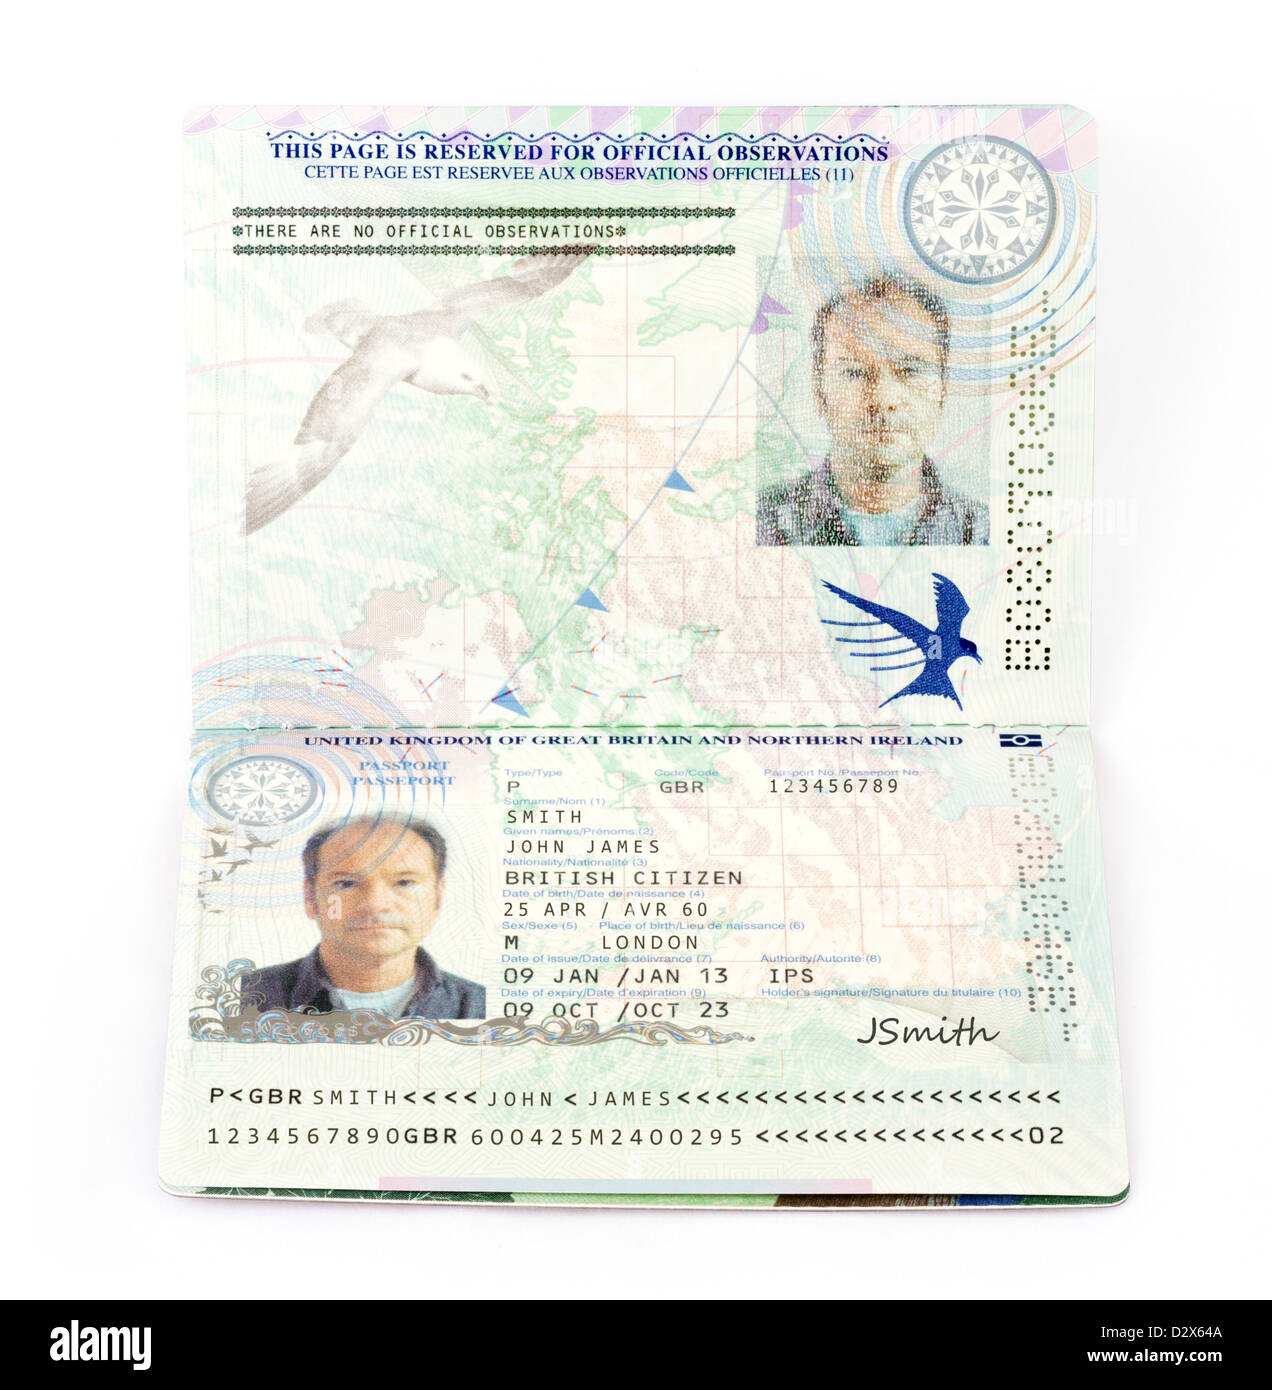 UK Passport. Eine Europäische Union biometrischen Pass für das Vereinigte Königreich (mit fiktiven Details) Stockfoto